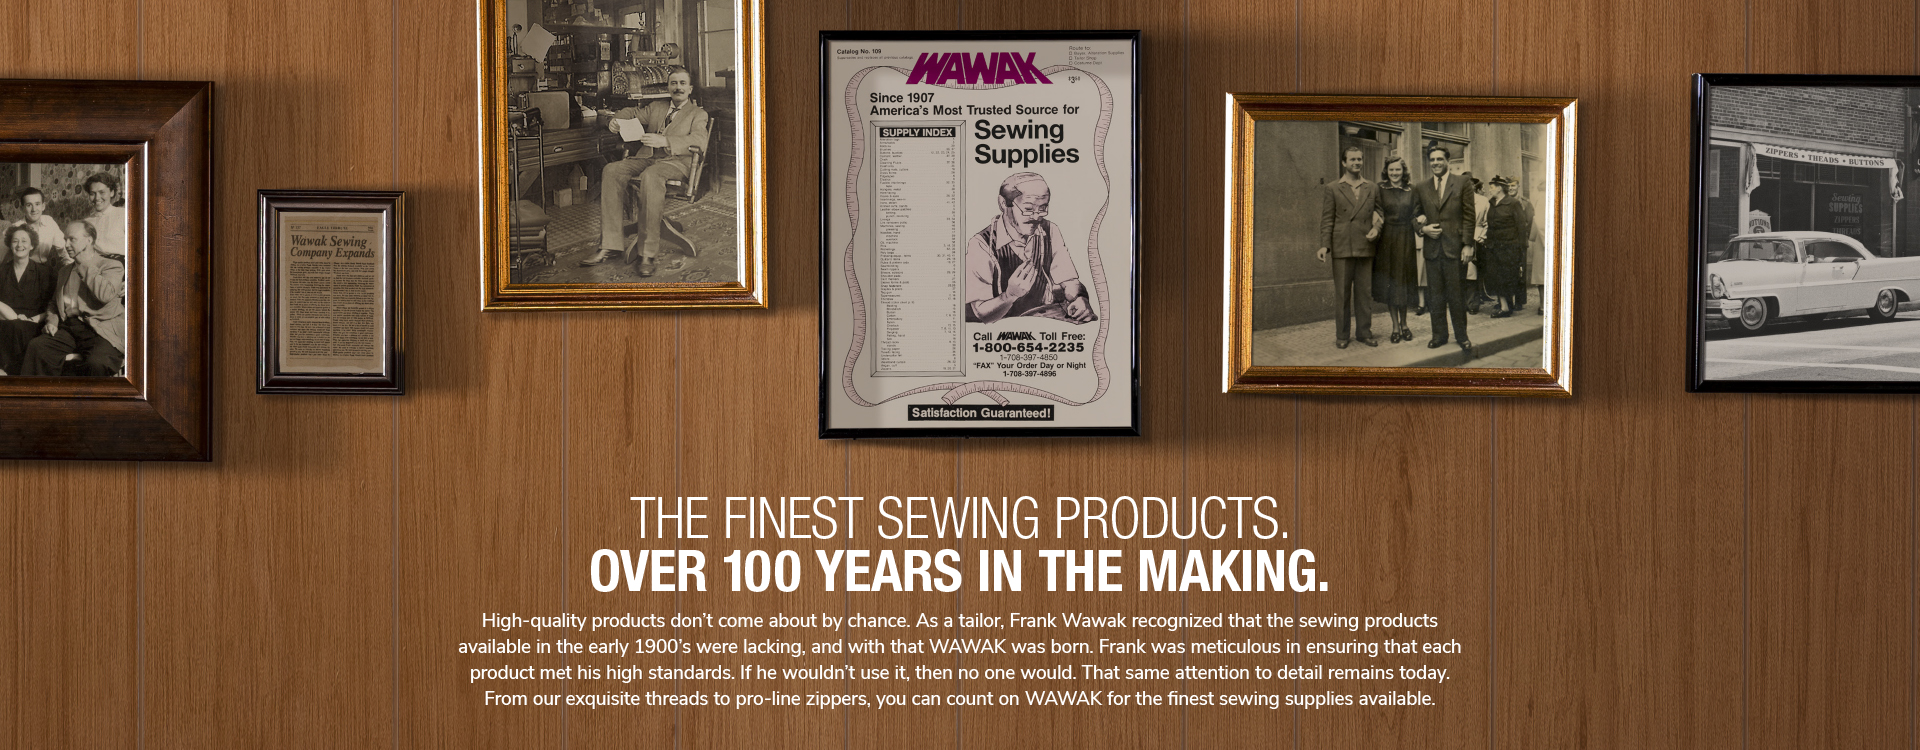 WAWAK – Finest Sewing Supplies l Since 1907